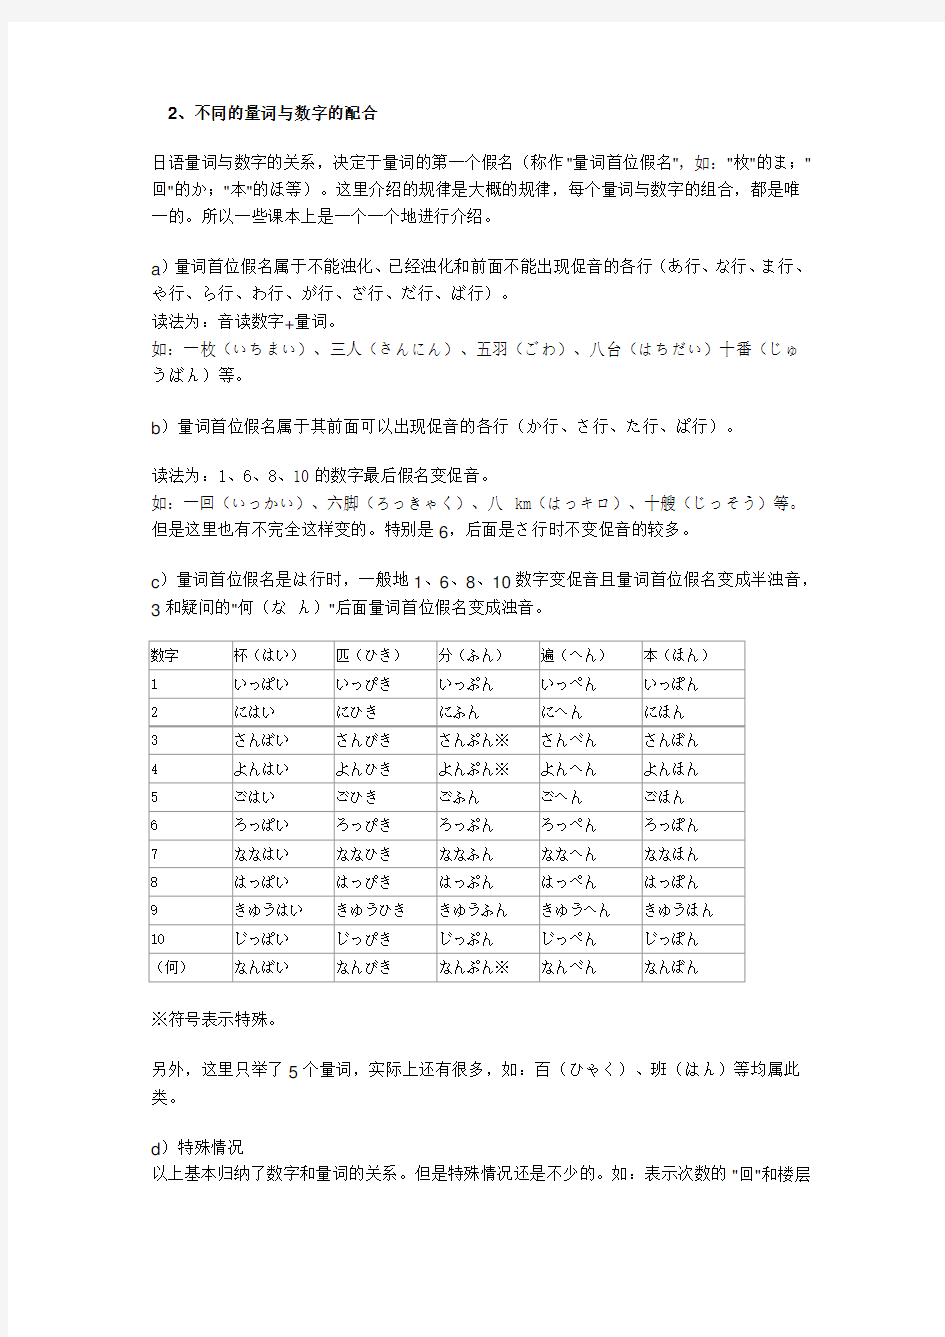 日语数字读法总结